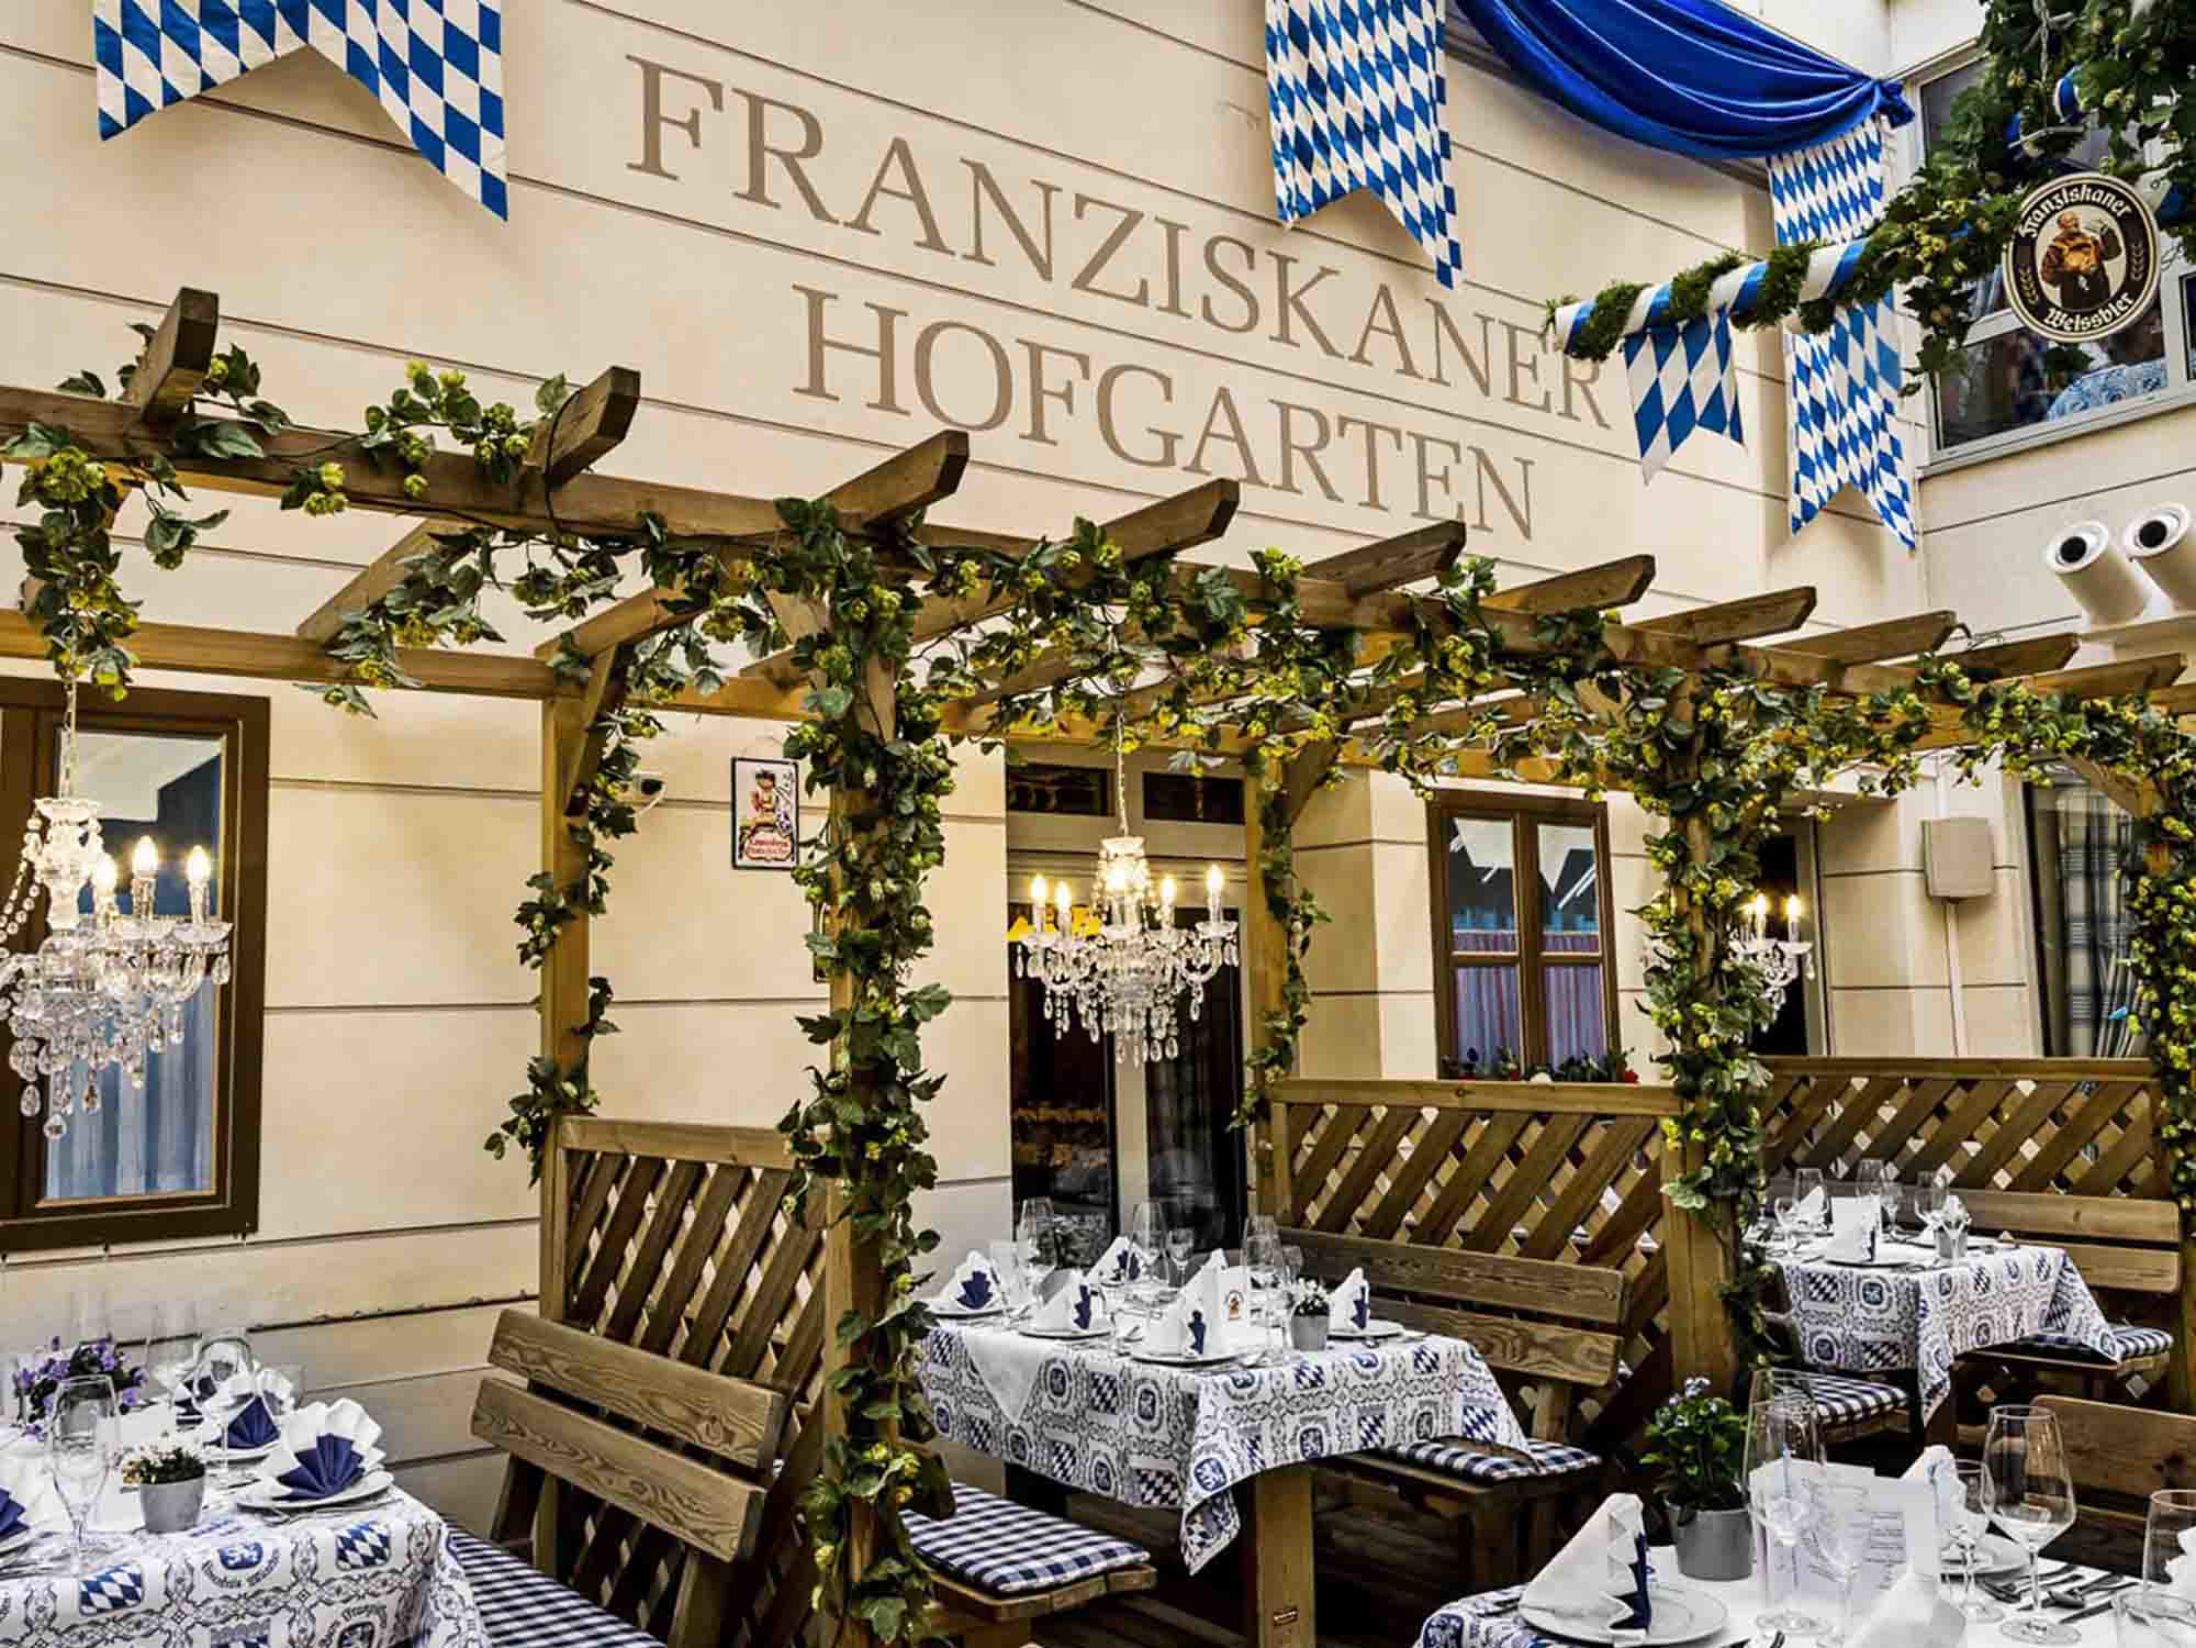 Zum Franziskaner - Best Restaurants in Munich